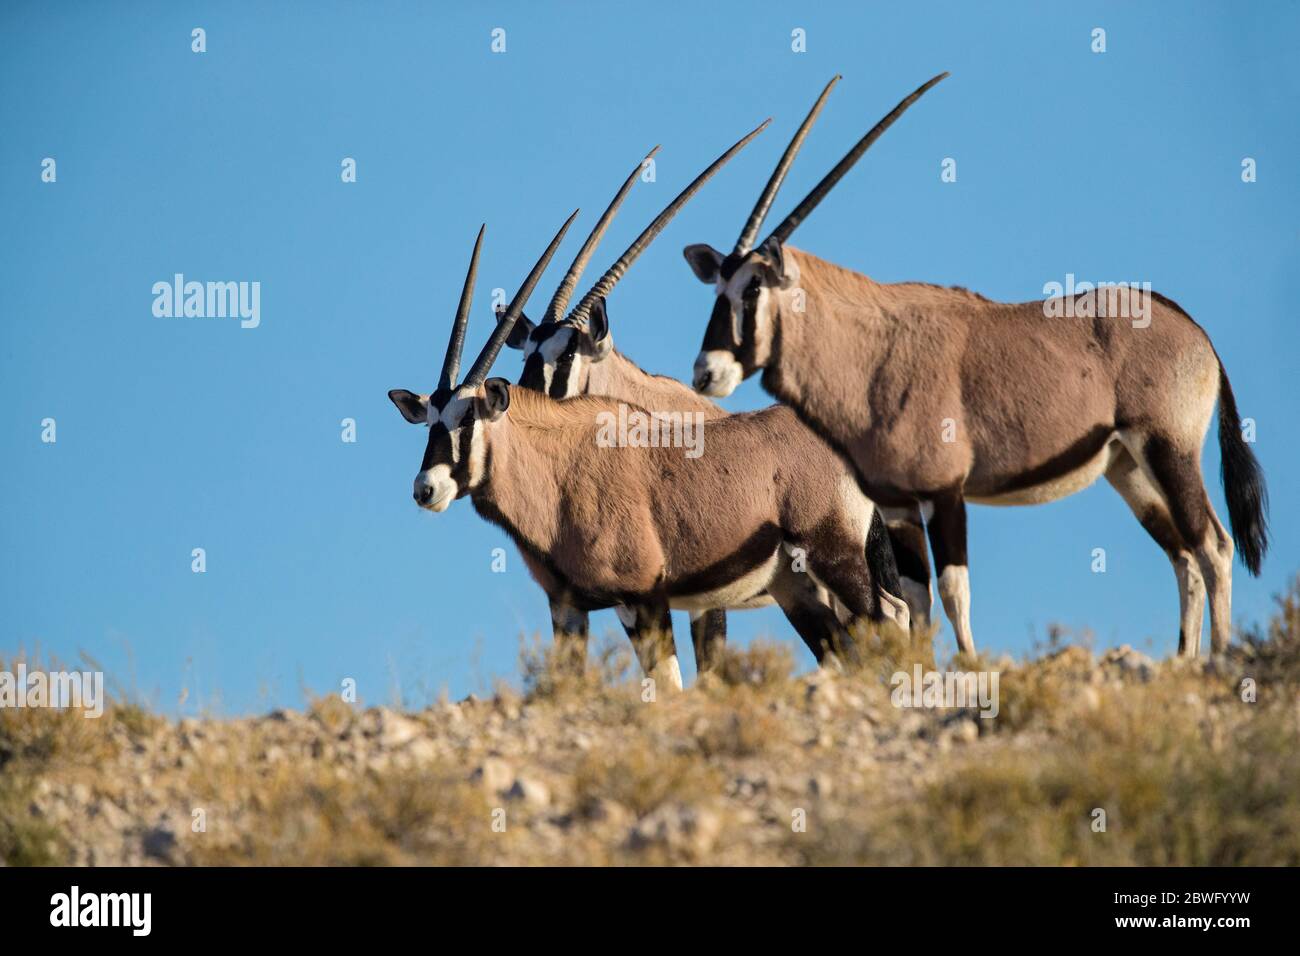 Groupe de trois gemsboks ou oryxes mâles (Oryx gazella), Parc transfrontalier Kgalagadi, Namibie, Afrique Banque D'Images